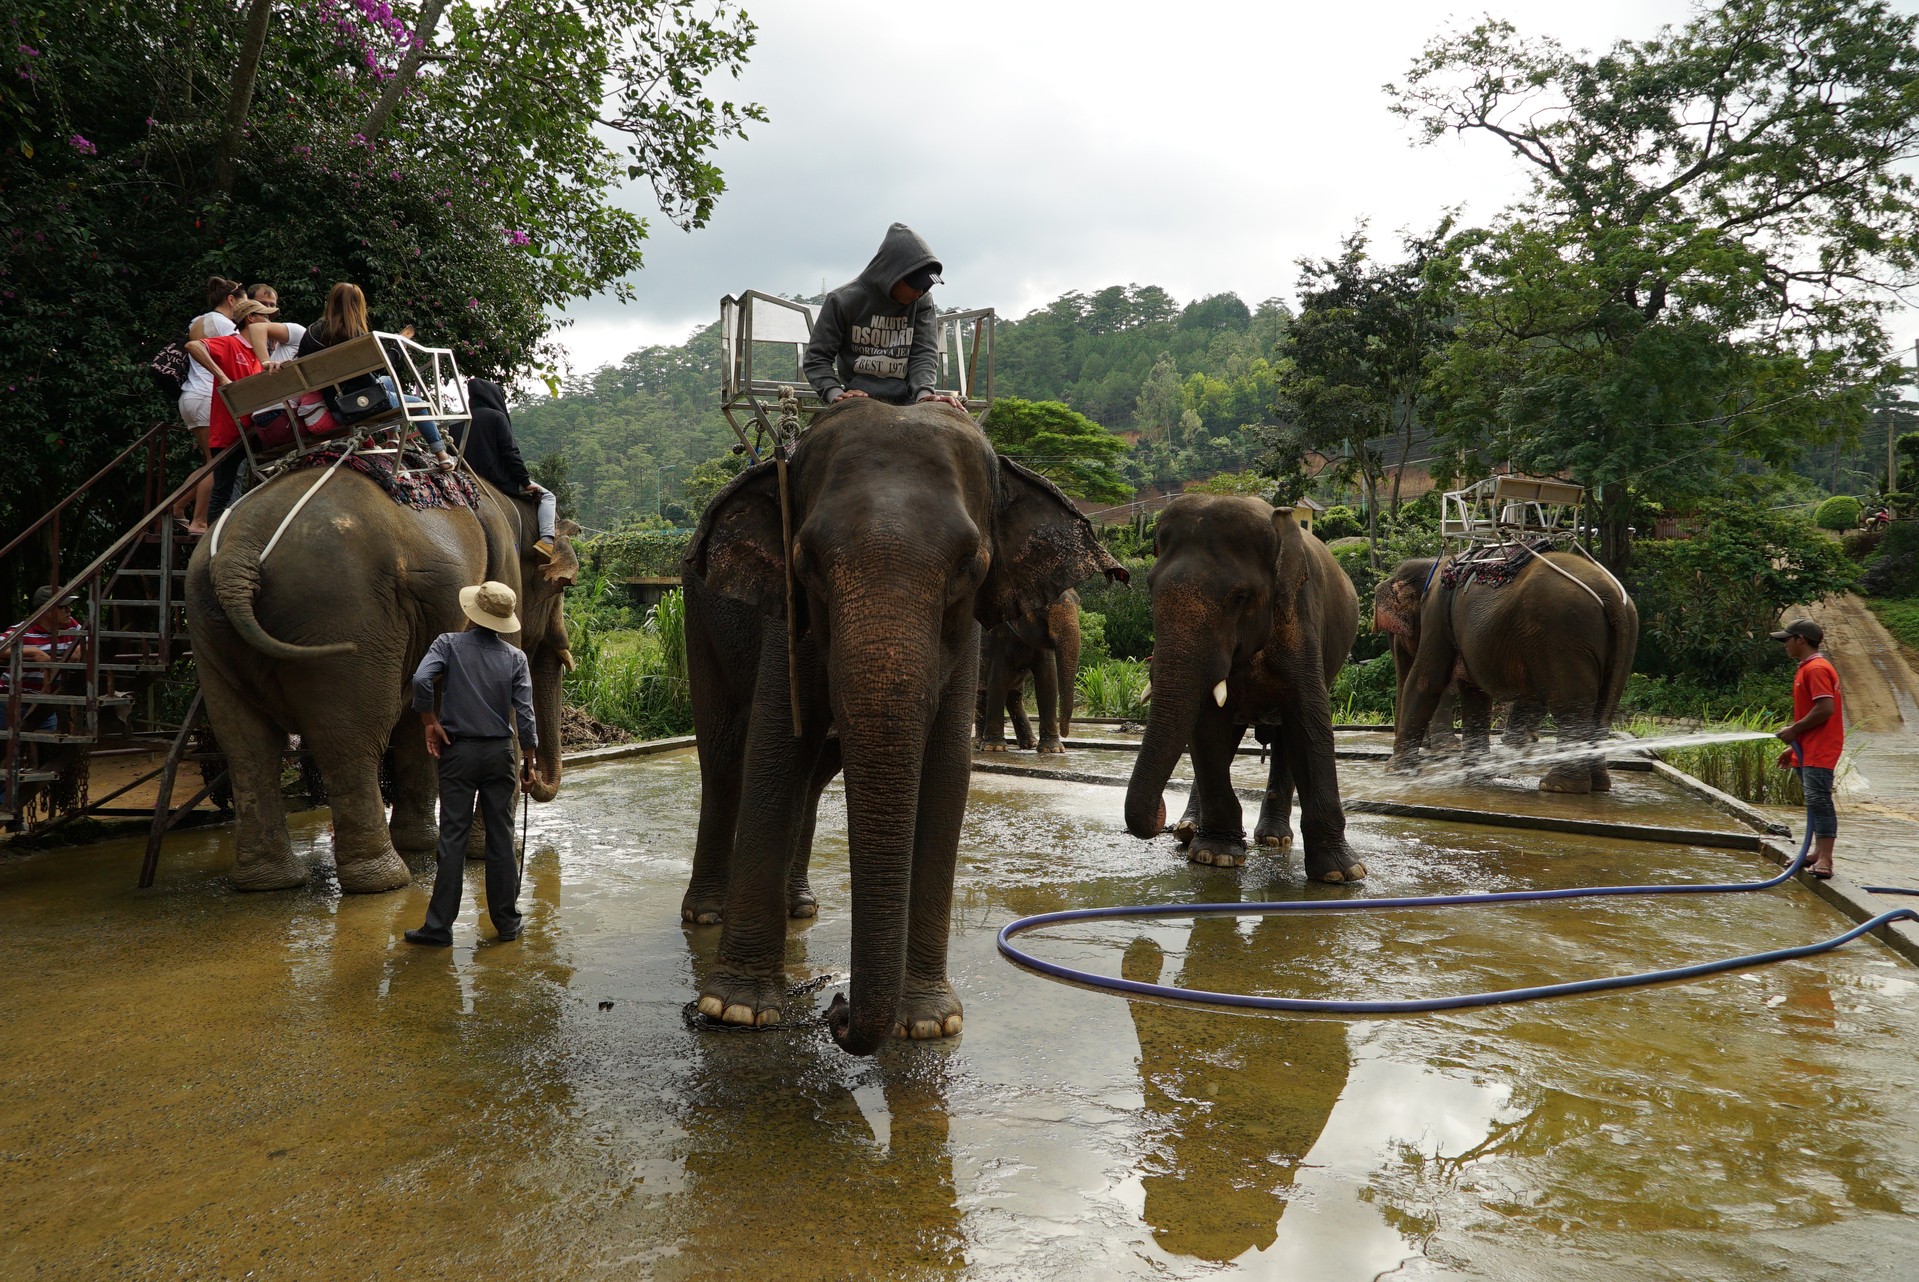 станция проката и техобслуживания слонов